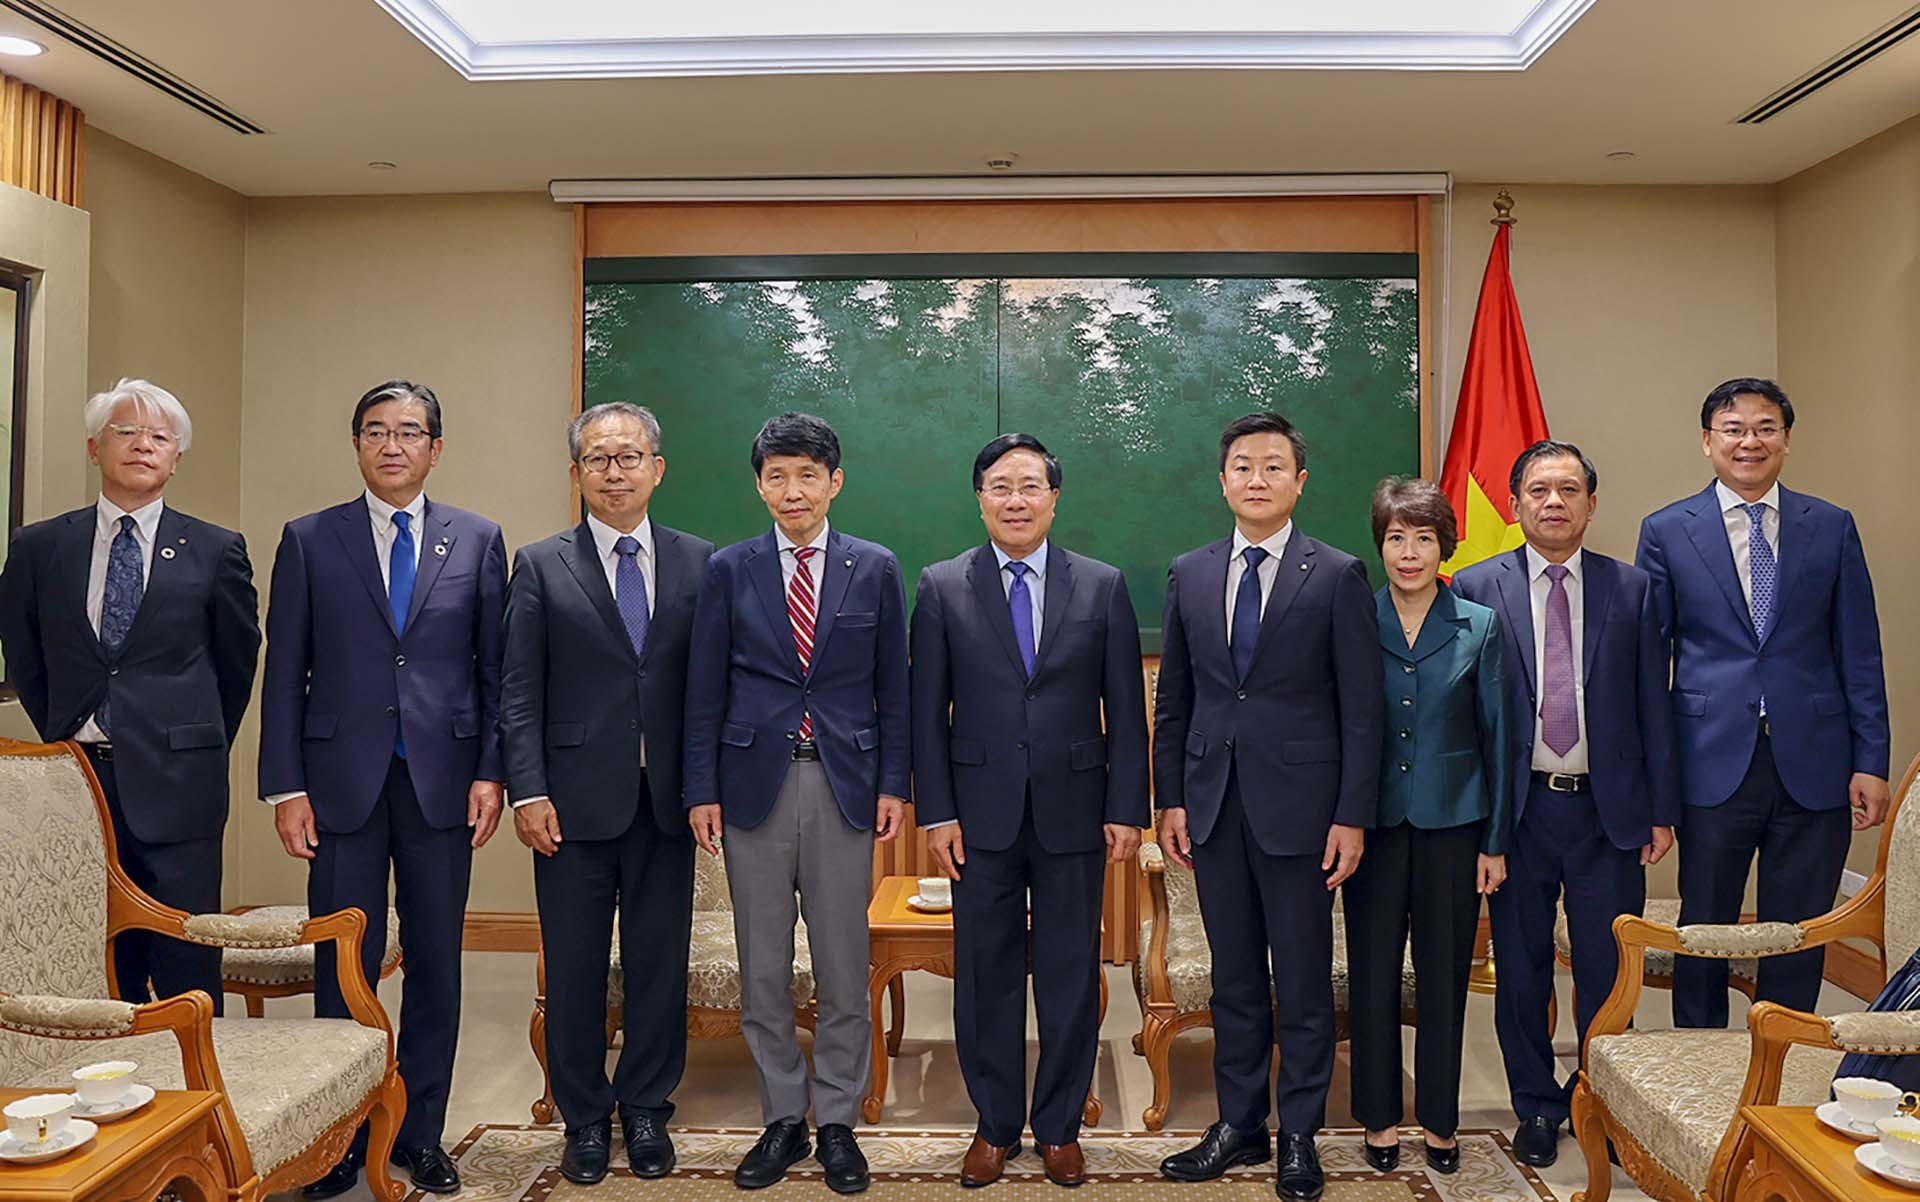 Phó Thủ tướng Thường trực Phạm Bình Minh và Thống đốc tỉnh Gunma Yamamoto Ichita cùng các đại biểu. (Nguồn: VGP)